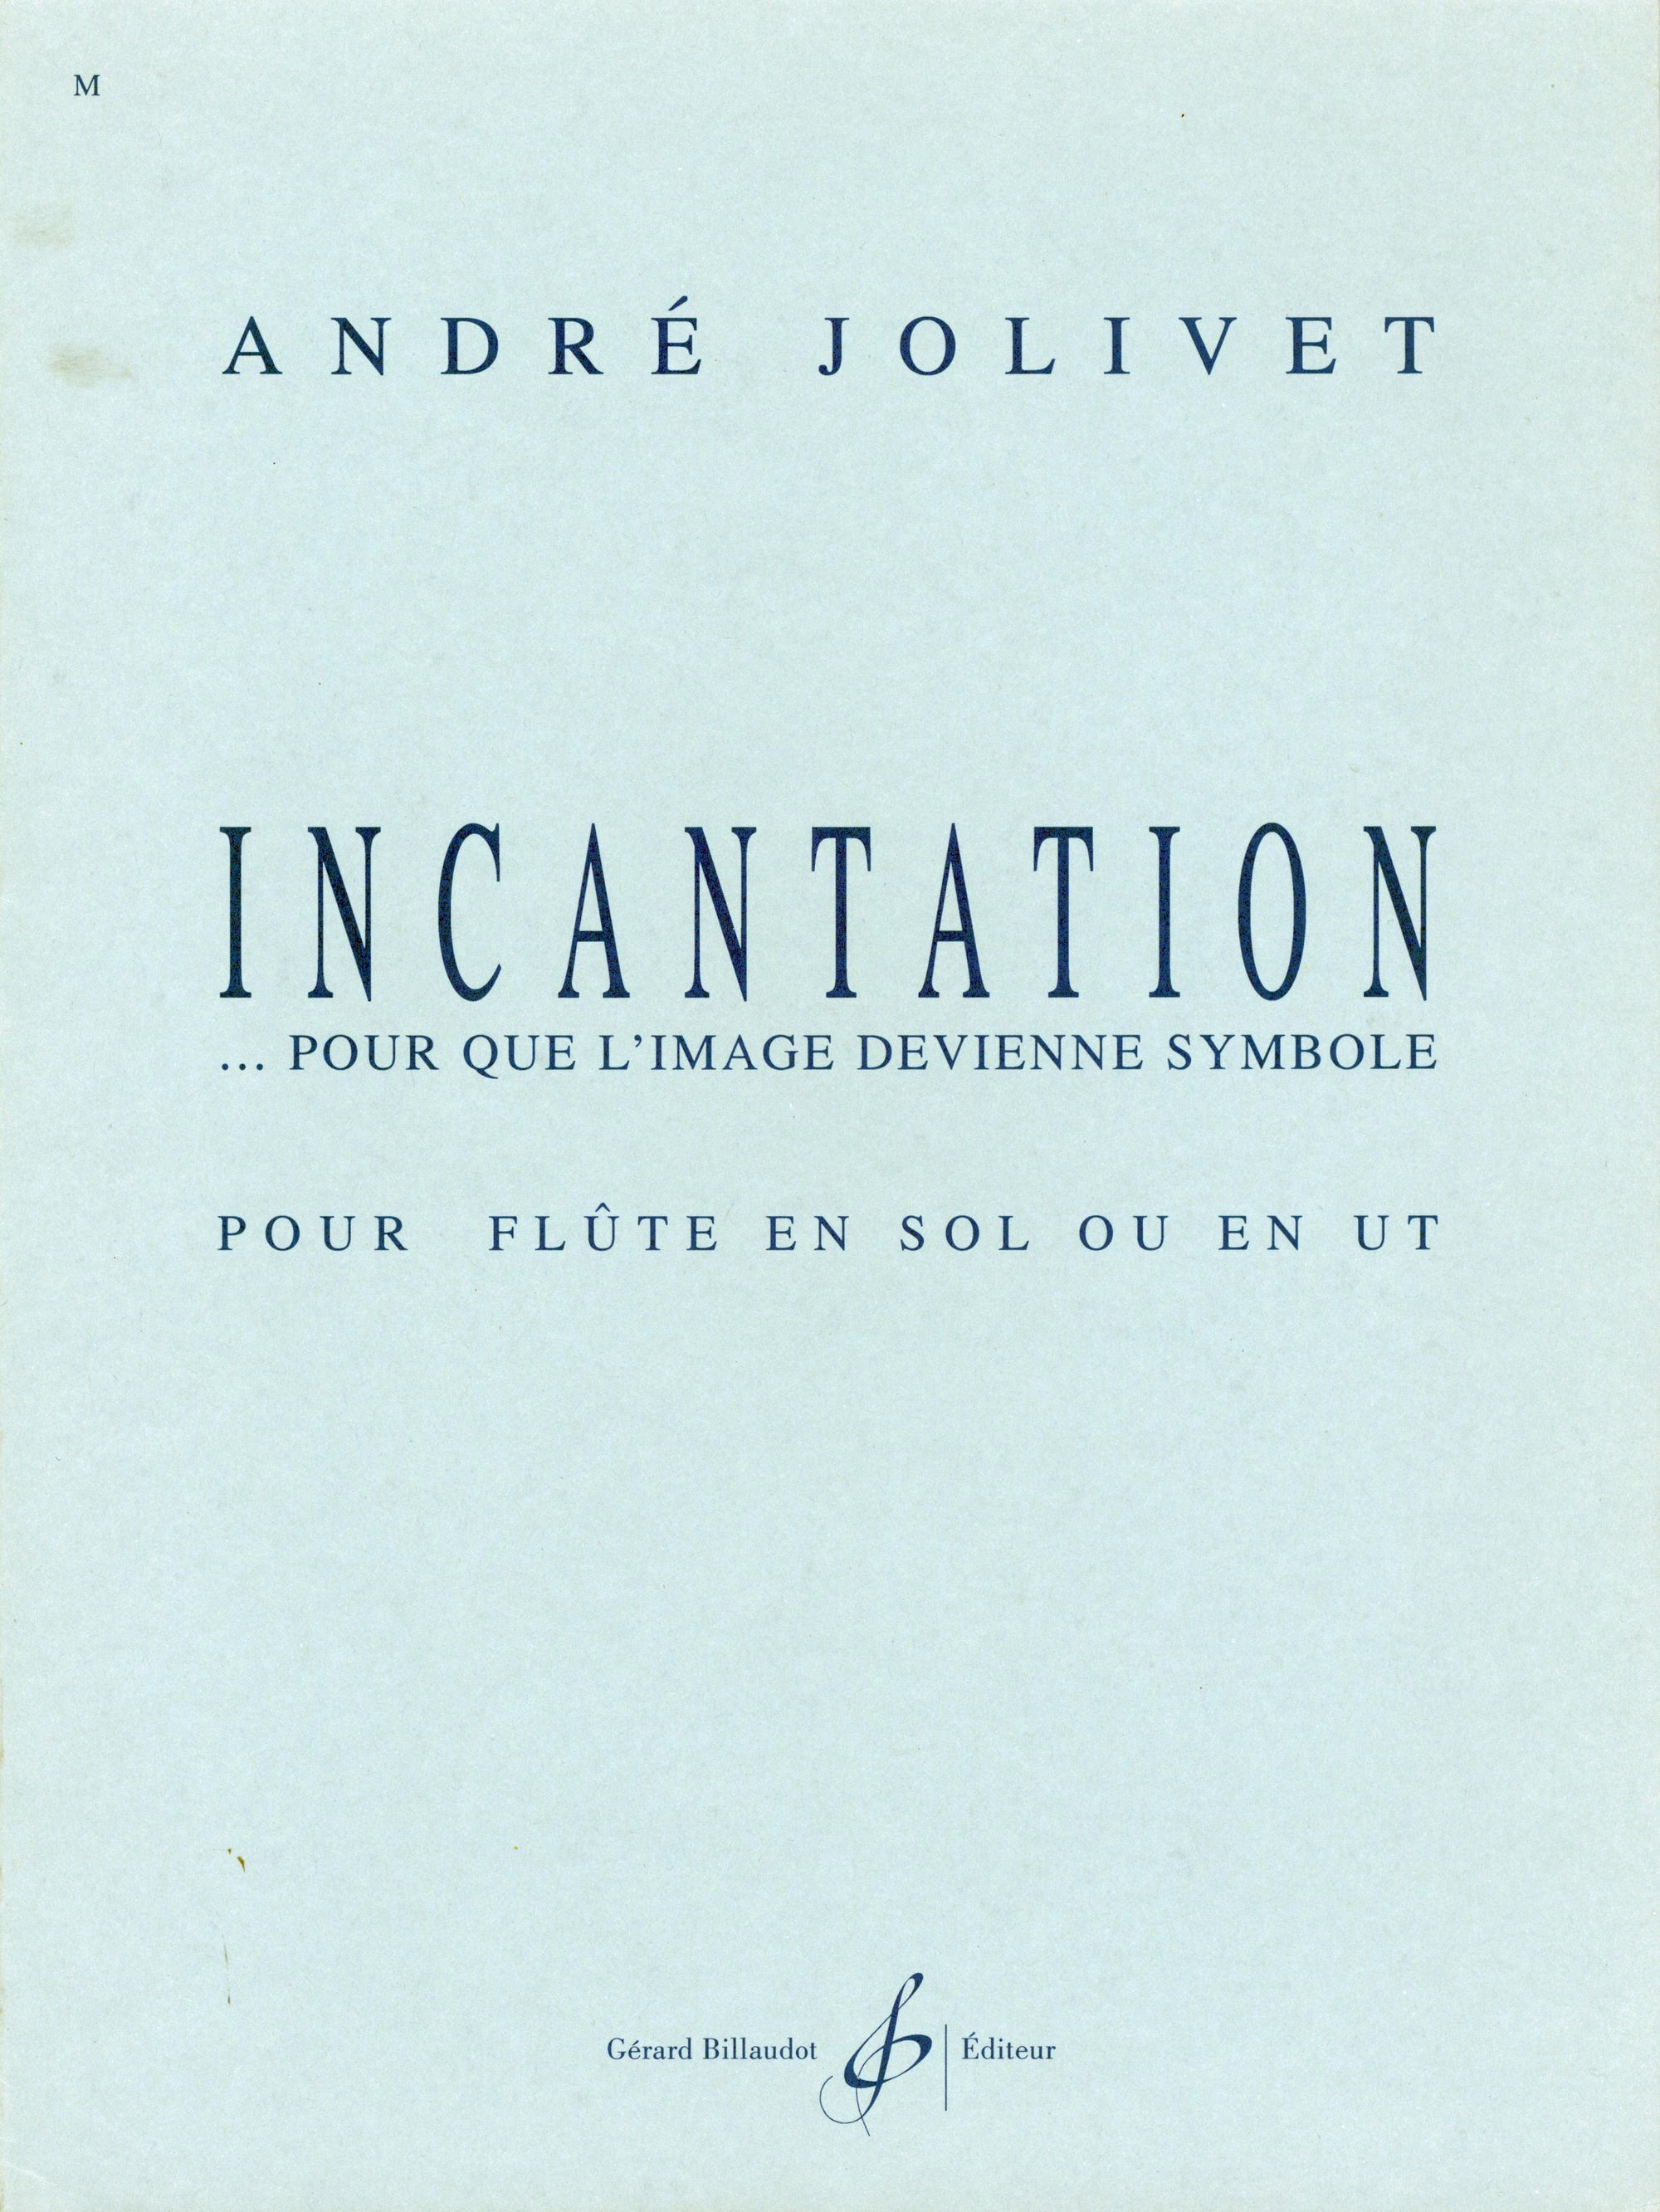 Jolivet: Incantation